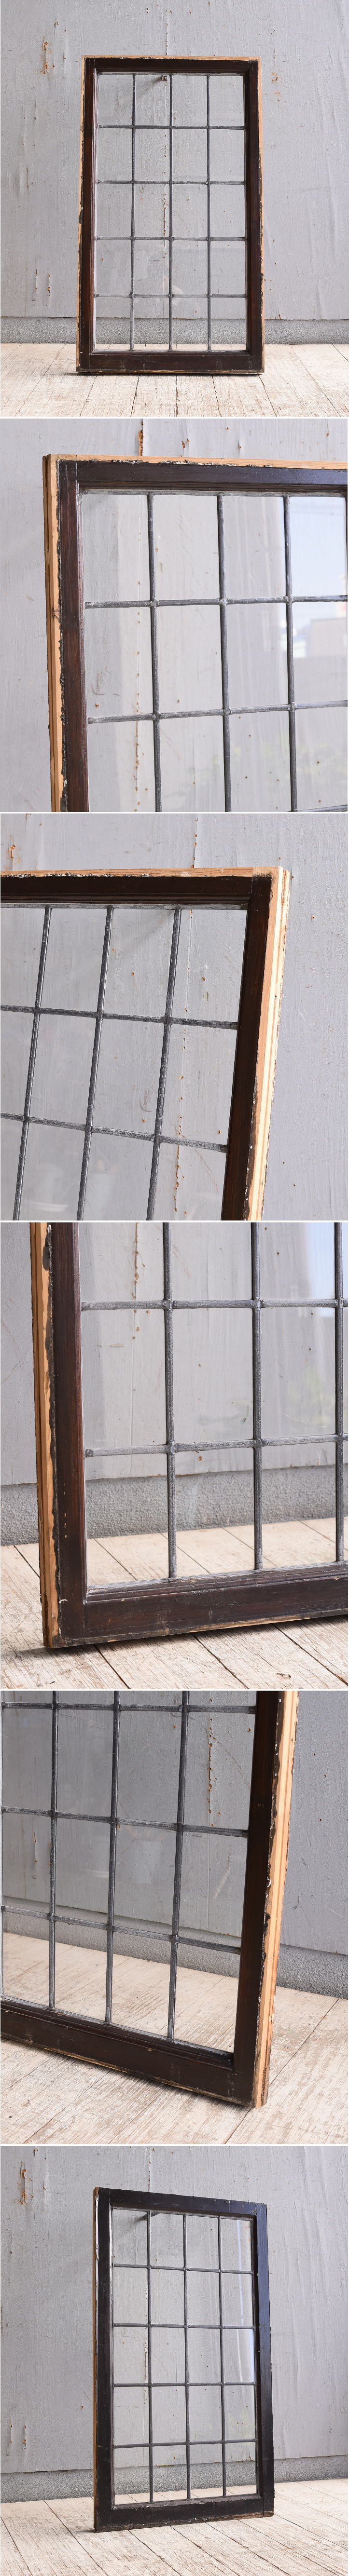 イギリス アンティーク 窓 無色透明 10101